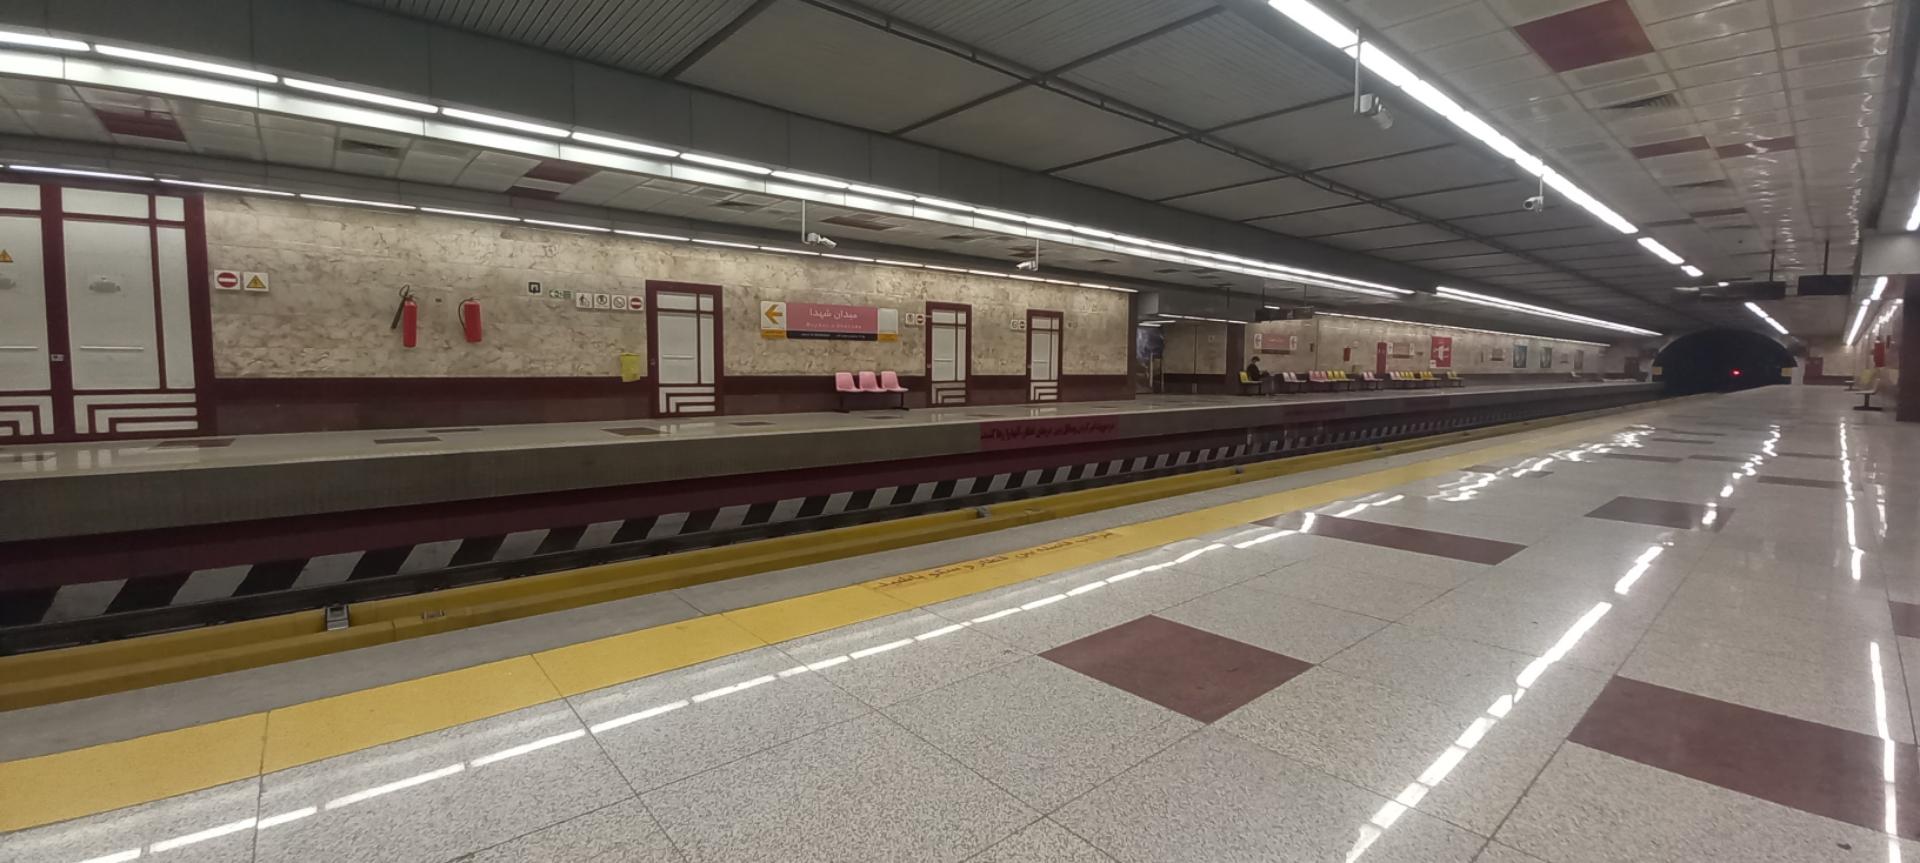 عکس ایستگاه مترو ميدان شهدا